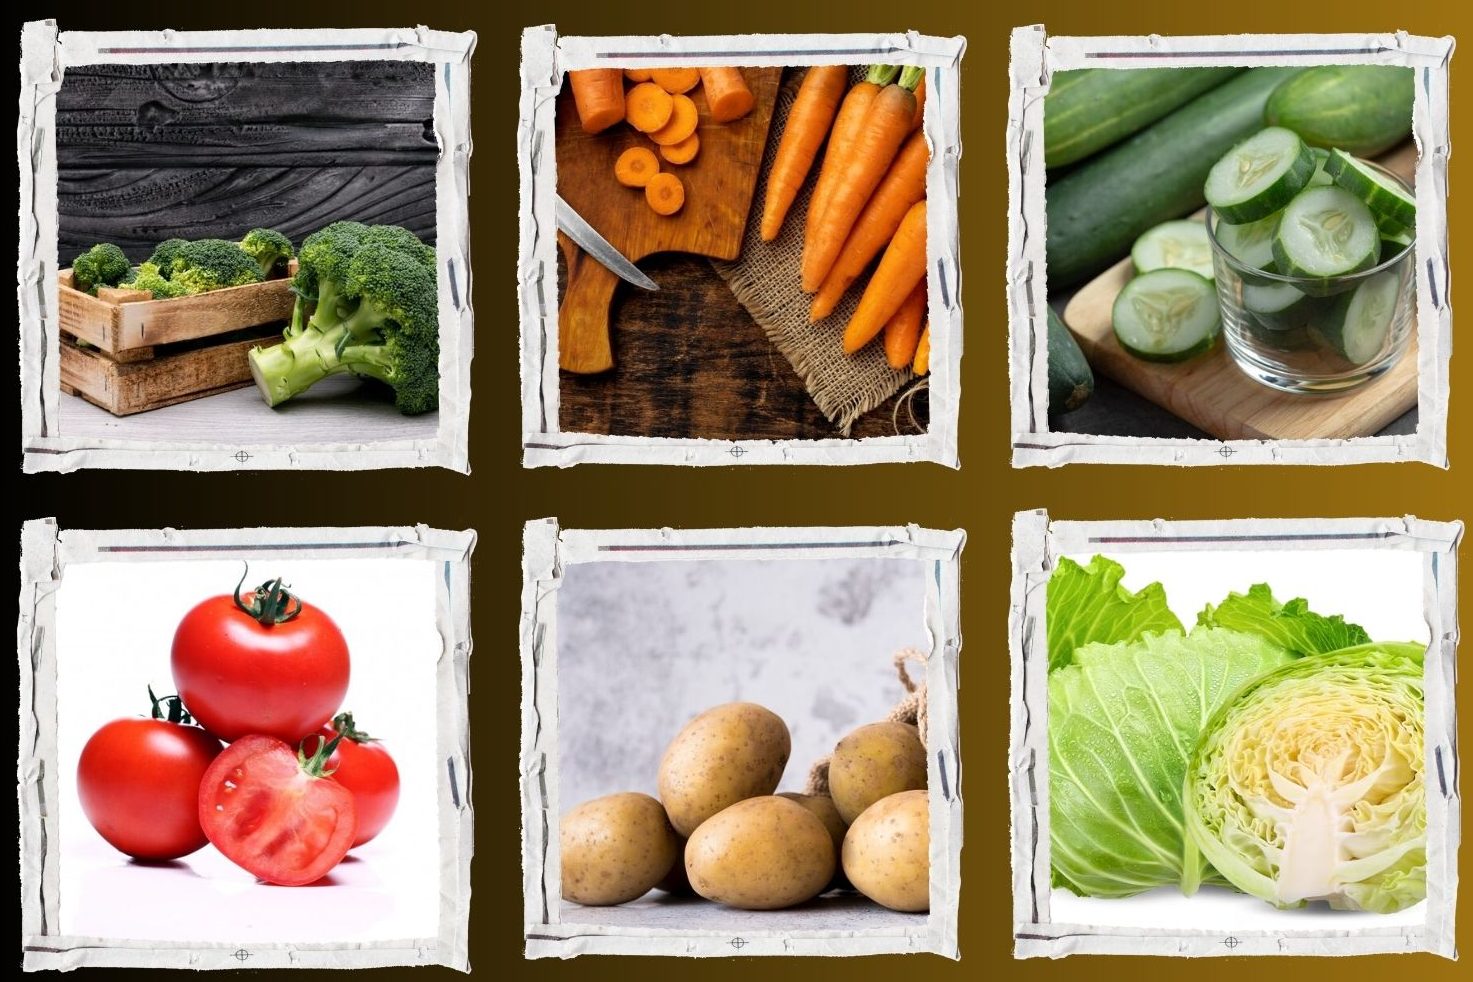 Some vegetables for uric acid management